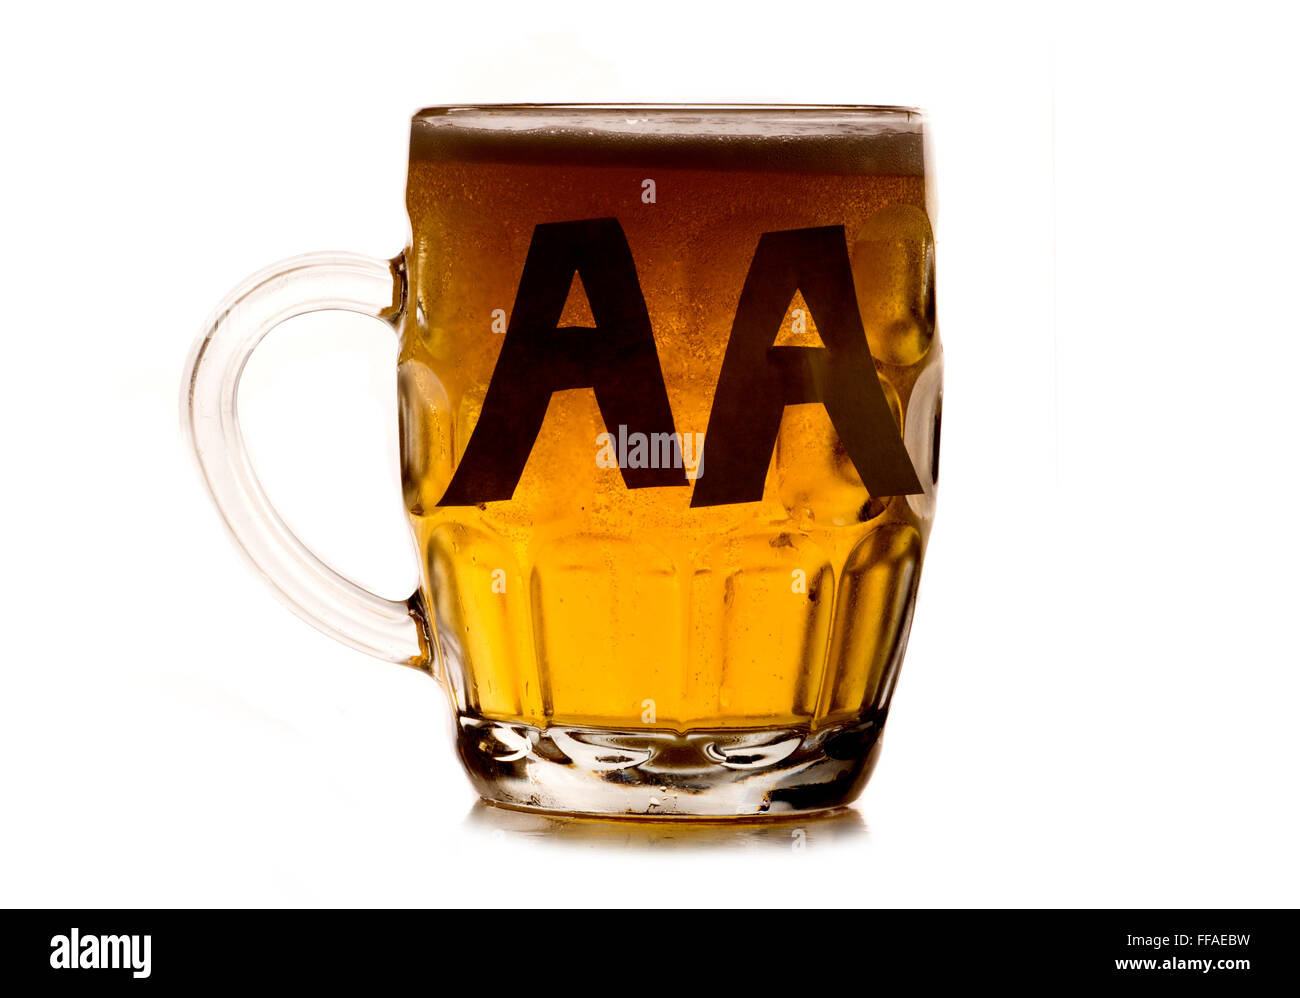 Les alcooliques anonymes pinte de bière dentelle Banque D'Images